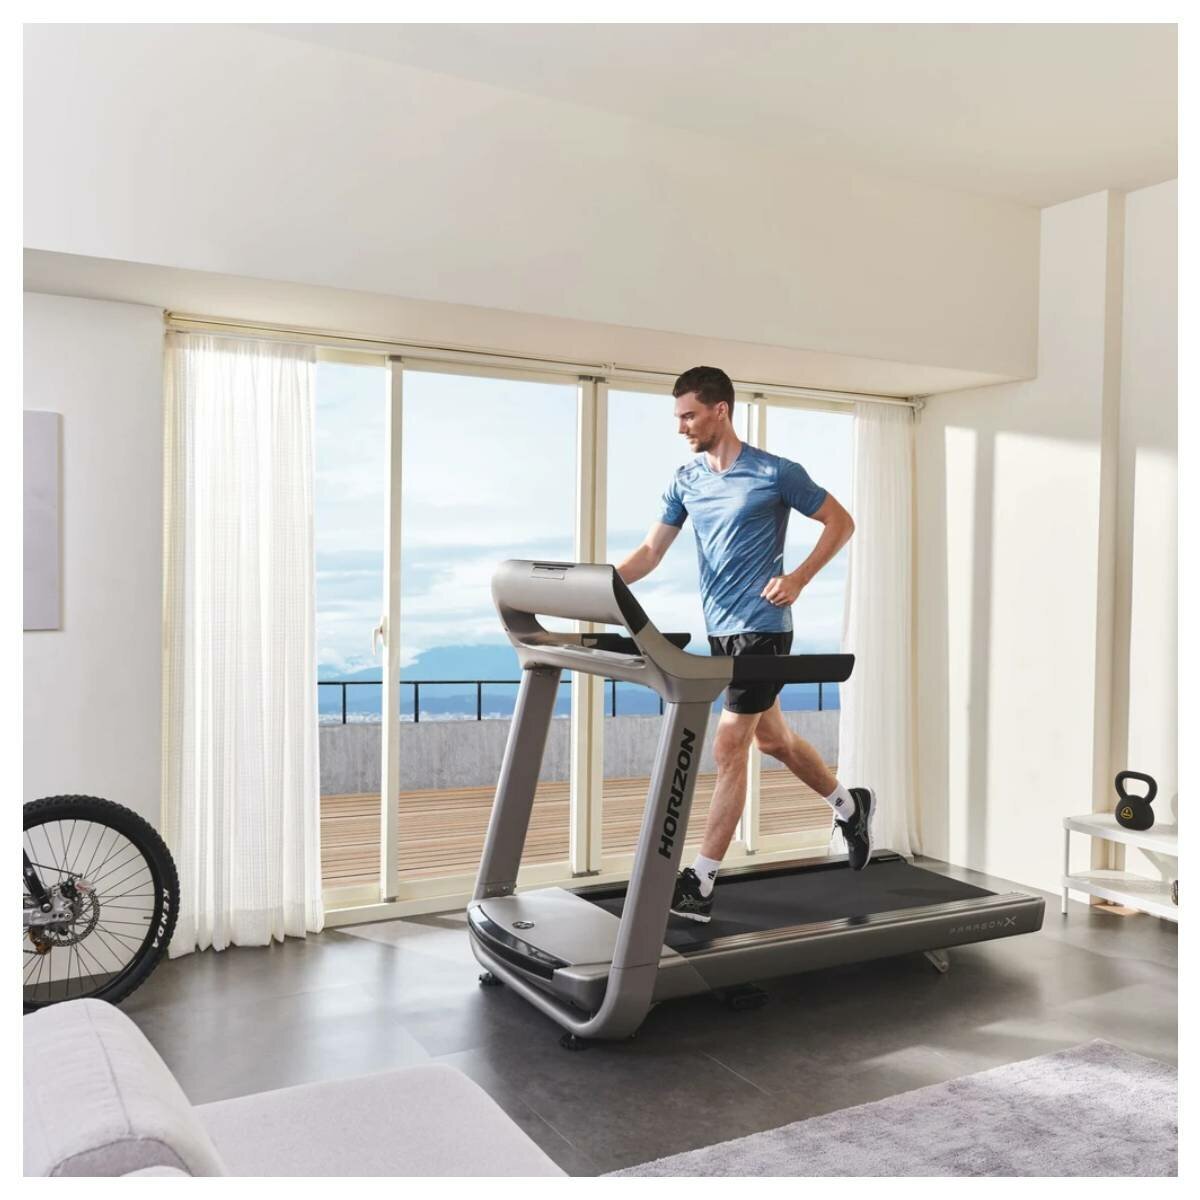 Horizon Paragon 4 Treadmill - Fitness Choice 